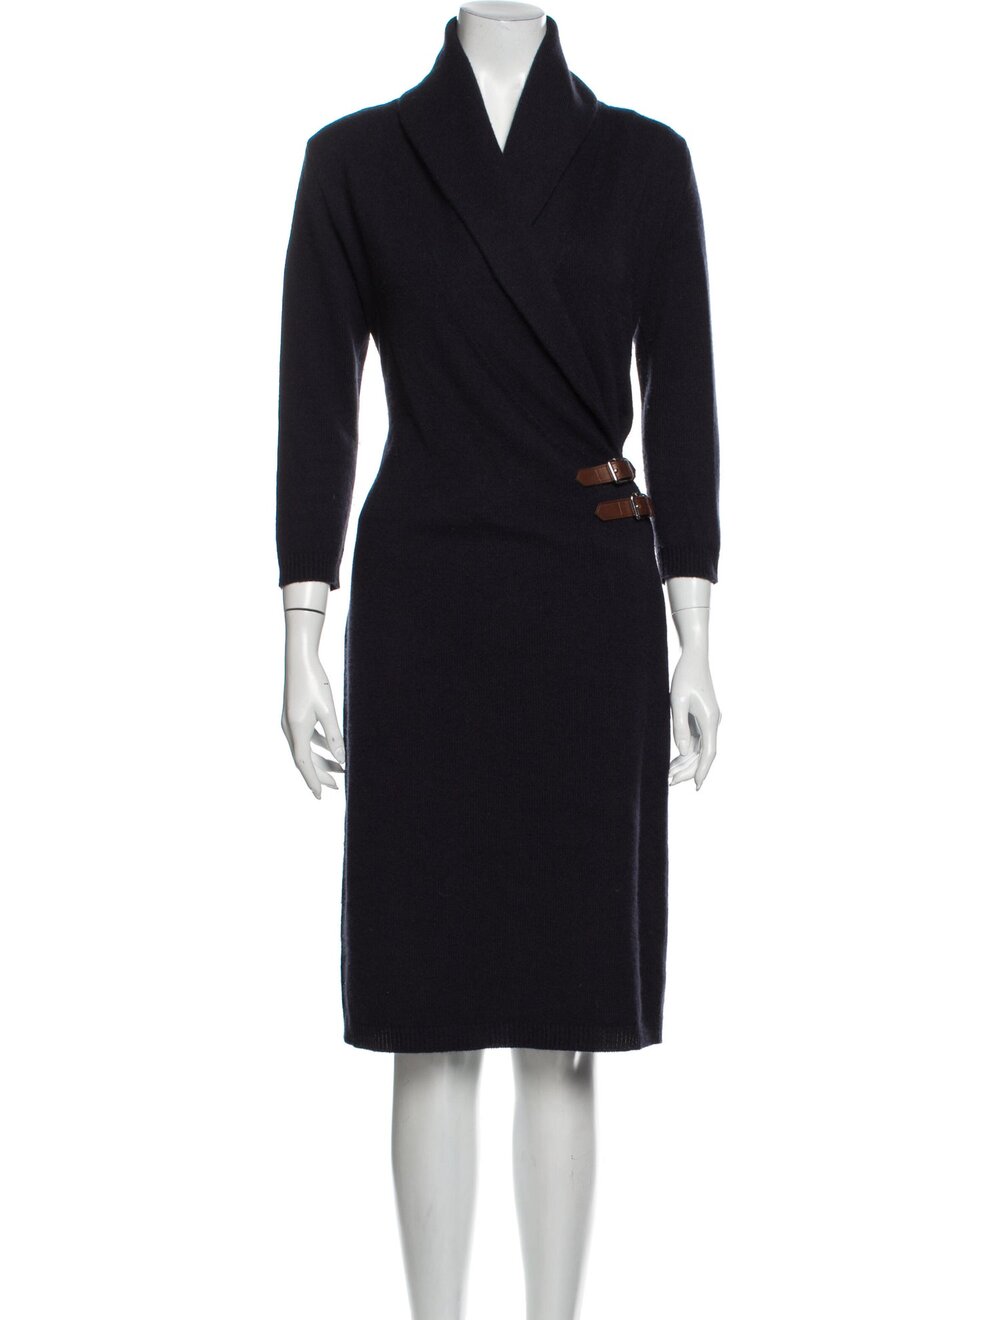 Ralph Lauren Merino Wool Knee-Length Dress in Black — UFO No More